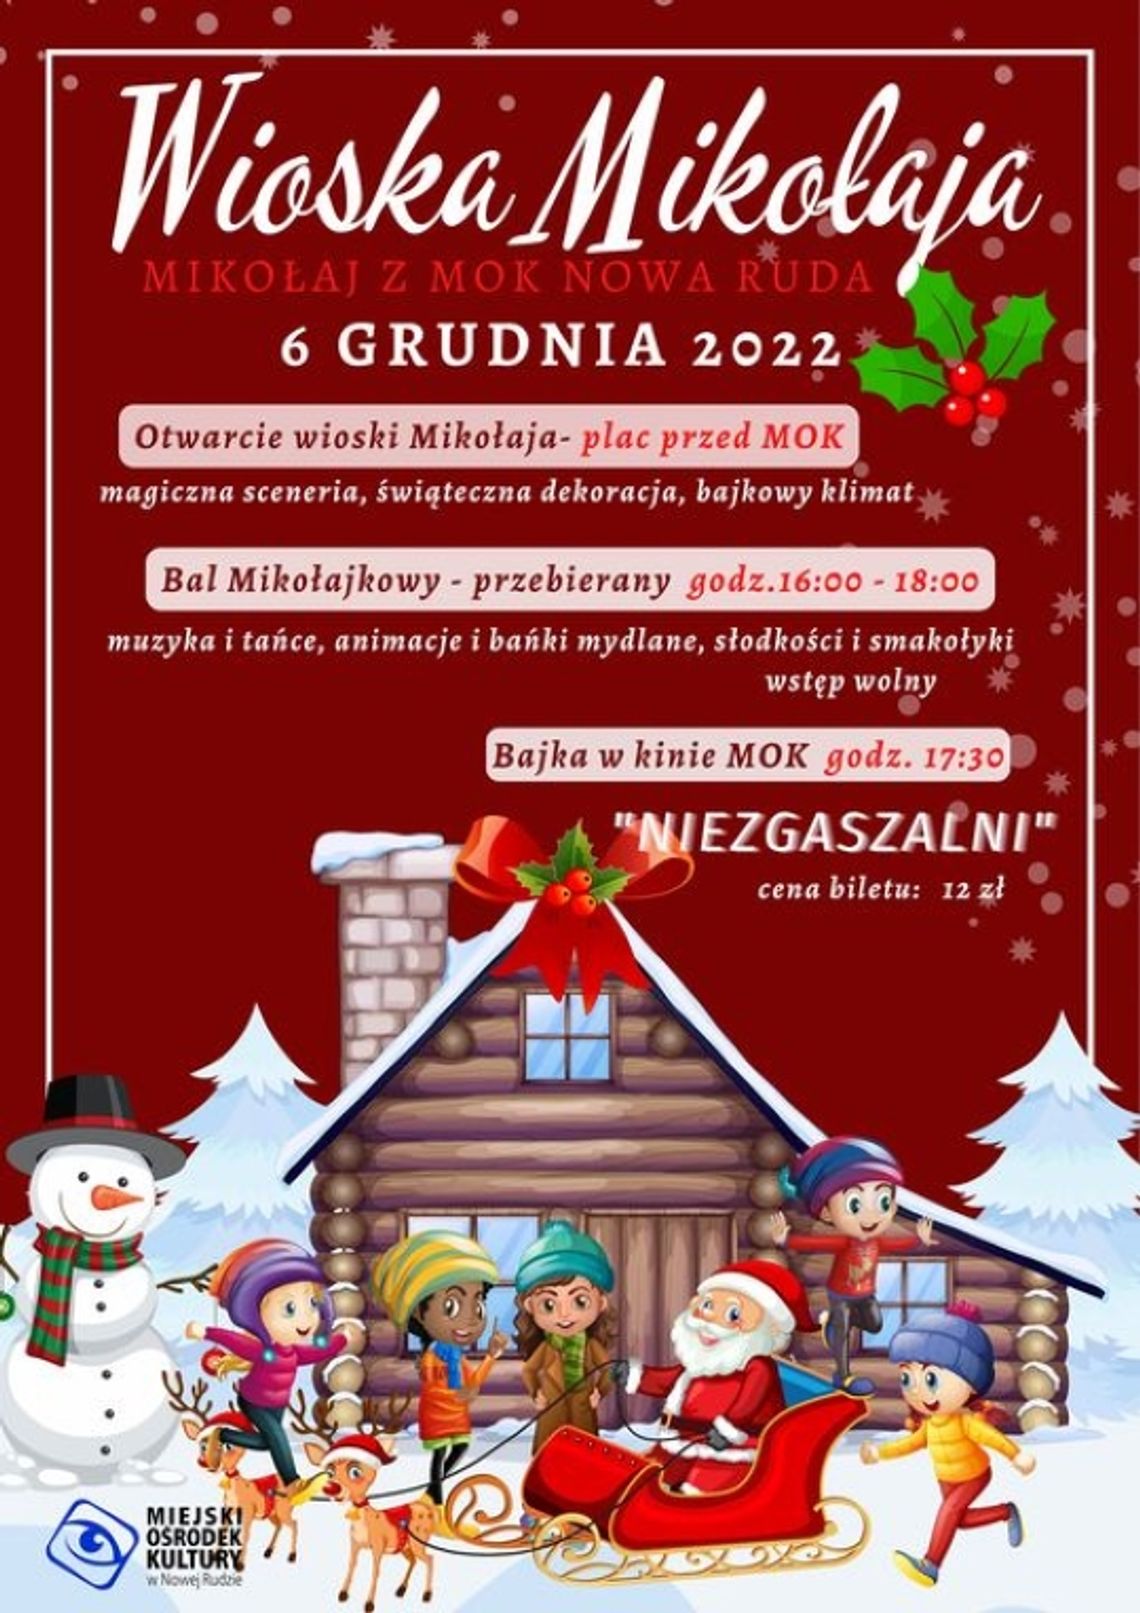 Nowa Ruda: 6 grudnia wystartuje Wioska Mikołaja